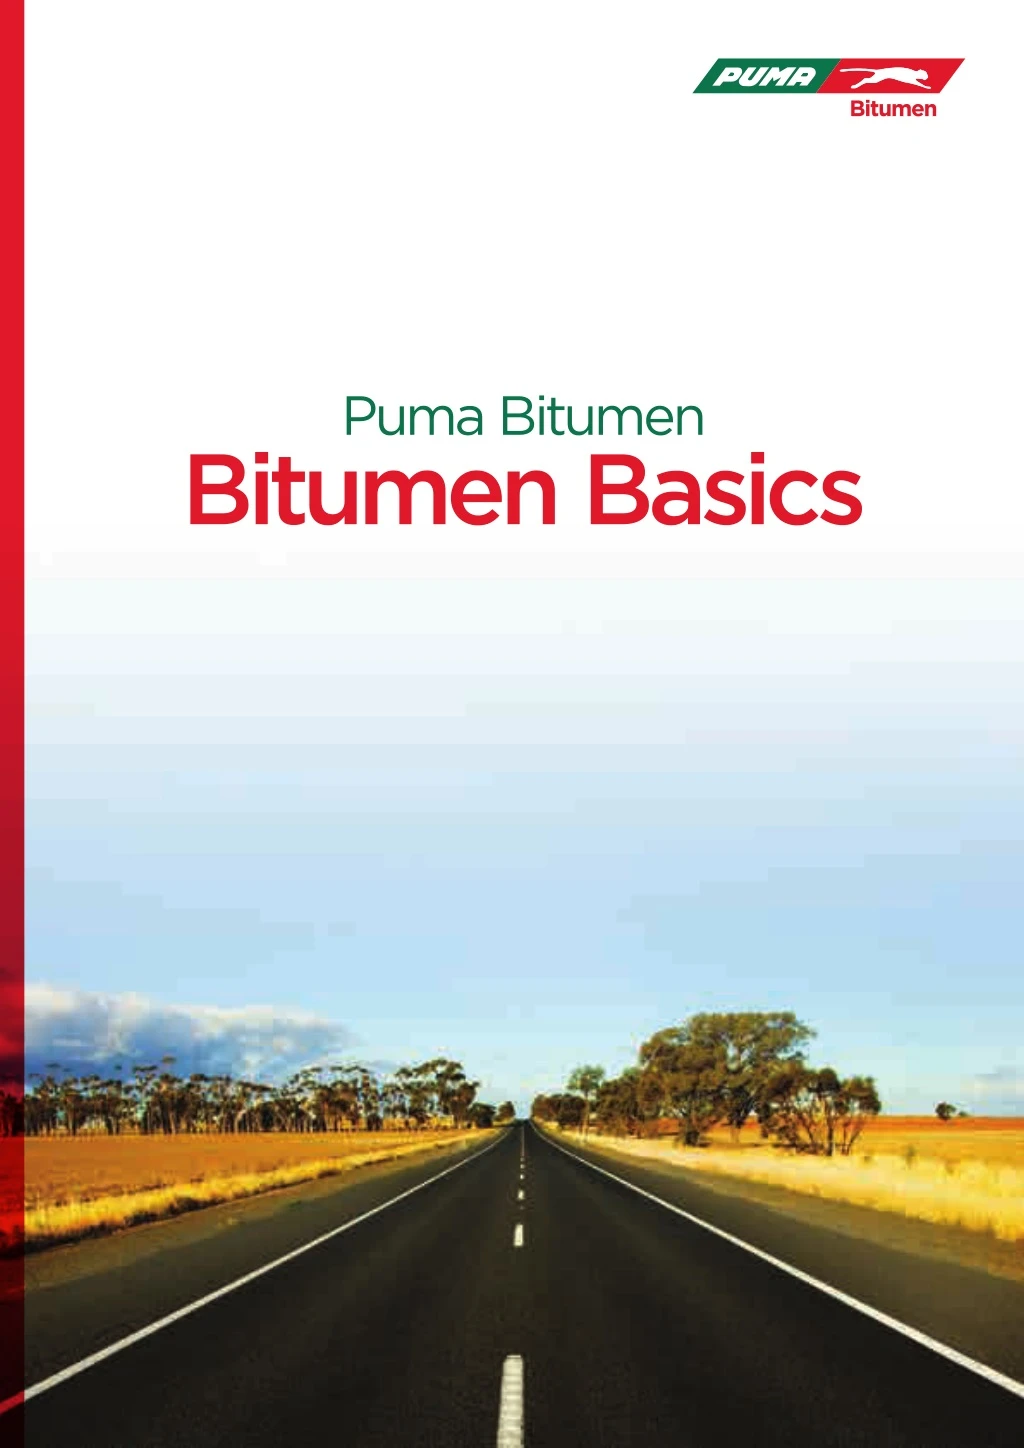 puma bitumen bitumen basics